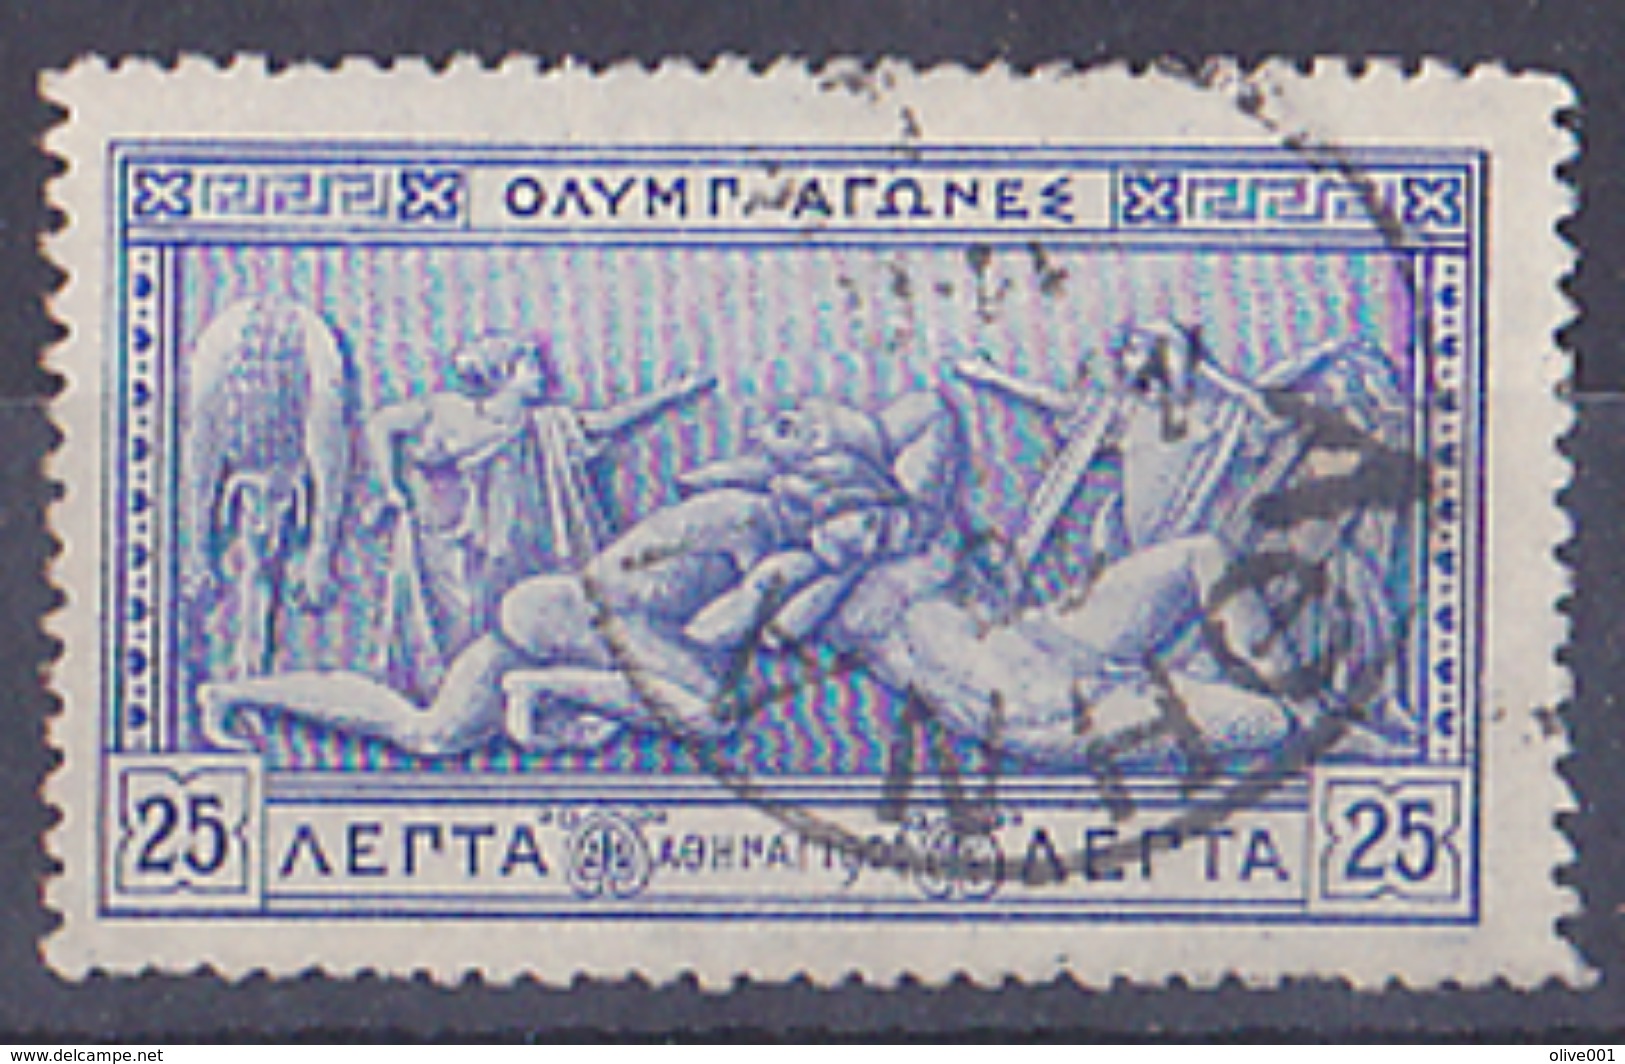 Grèce Athènes 10ème Anniversaire Des 1er Jeux Olympique Moderne 1906 1 Tp Y&T N° 171 Obli Superbe à Avoir Et à Voir - Ete 1896: Athènes